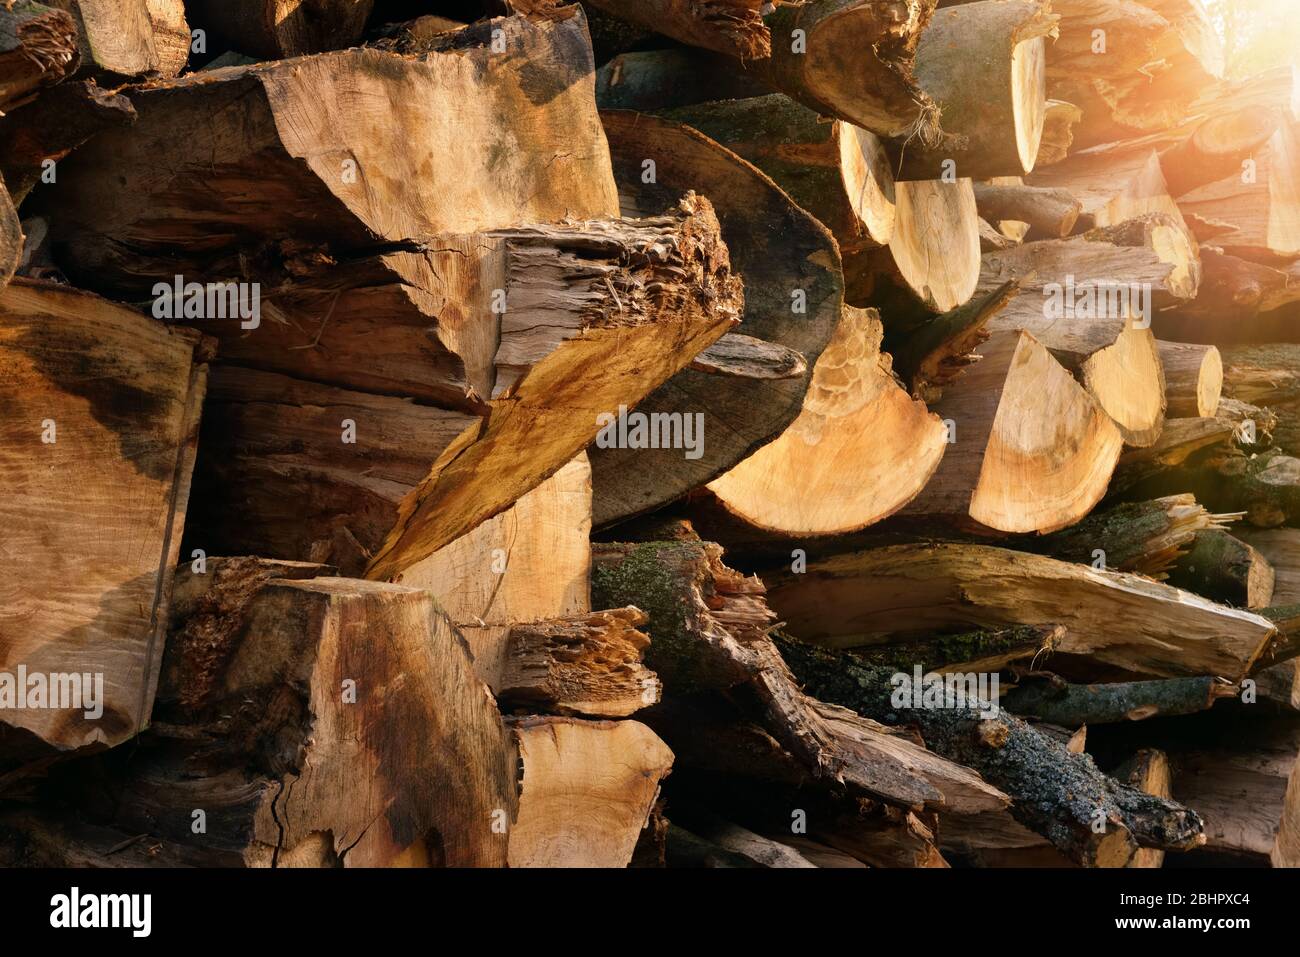 Colpo all'aperto di un mucchio di legna da ardere accatastato illuminato da bei raggi caldi di luce del sole, con colori piacevoli e profondità Foto Stock